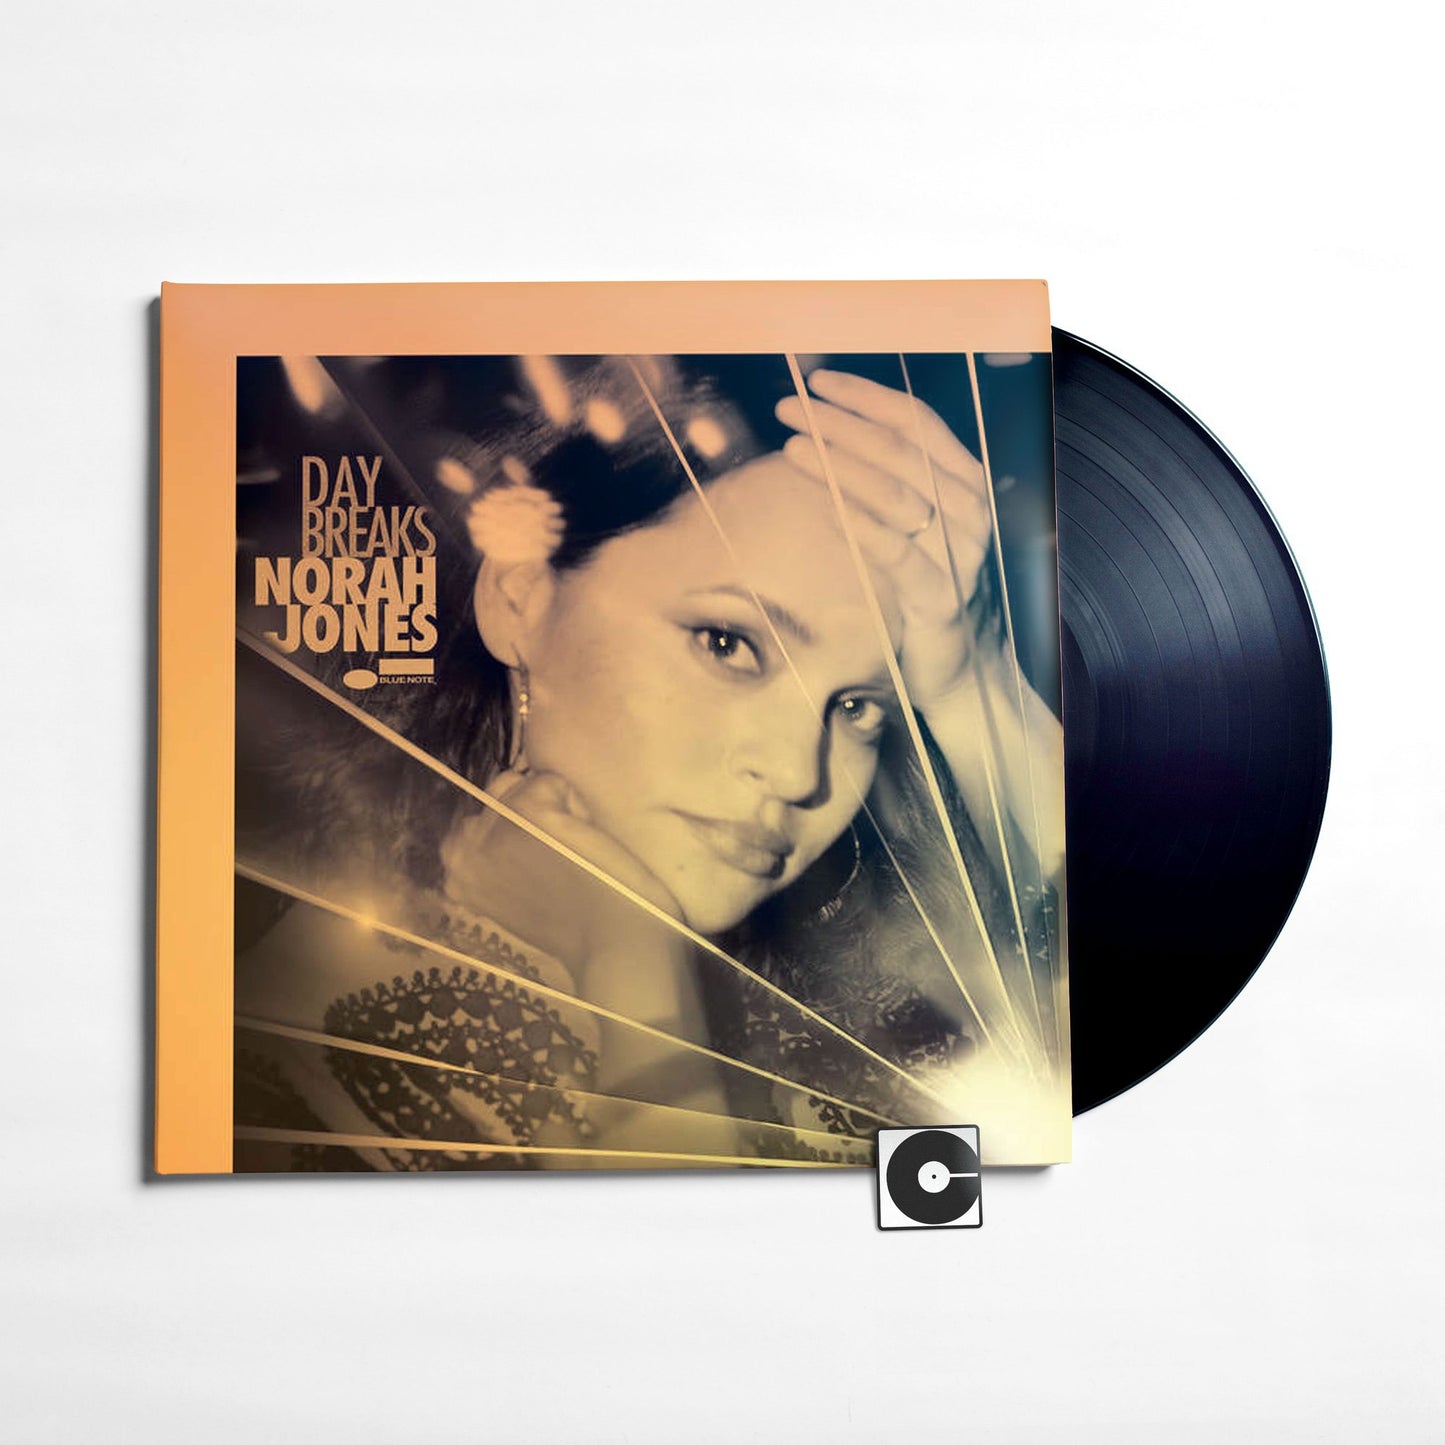 Norah Jones - "Day Breaks"